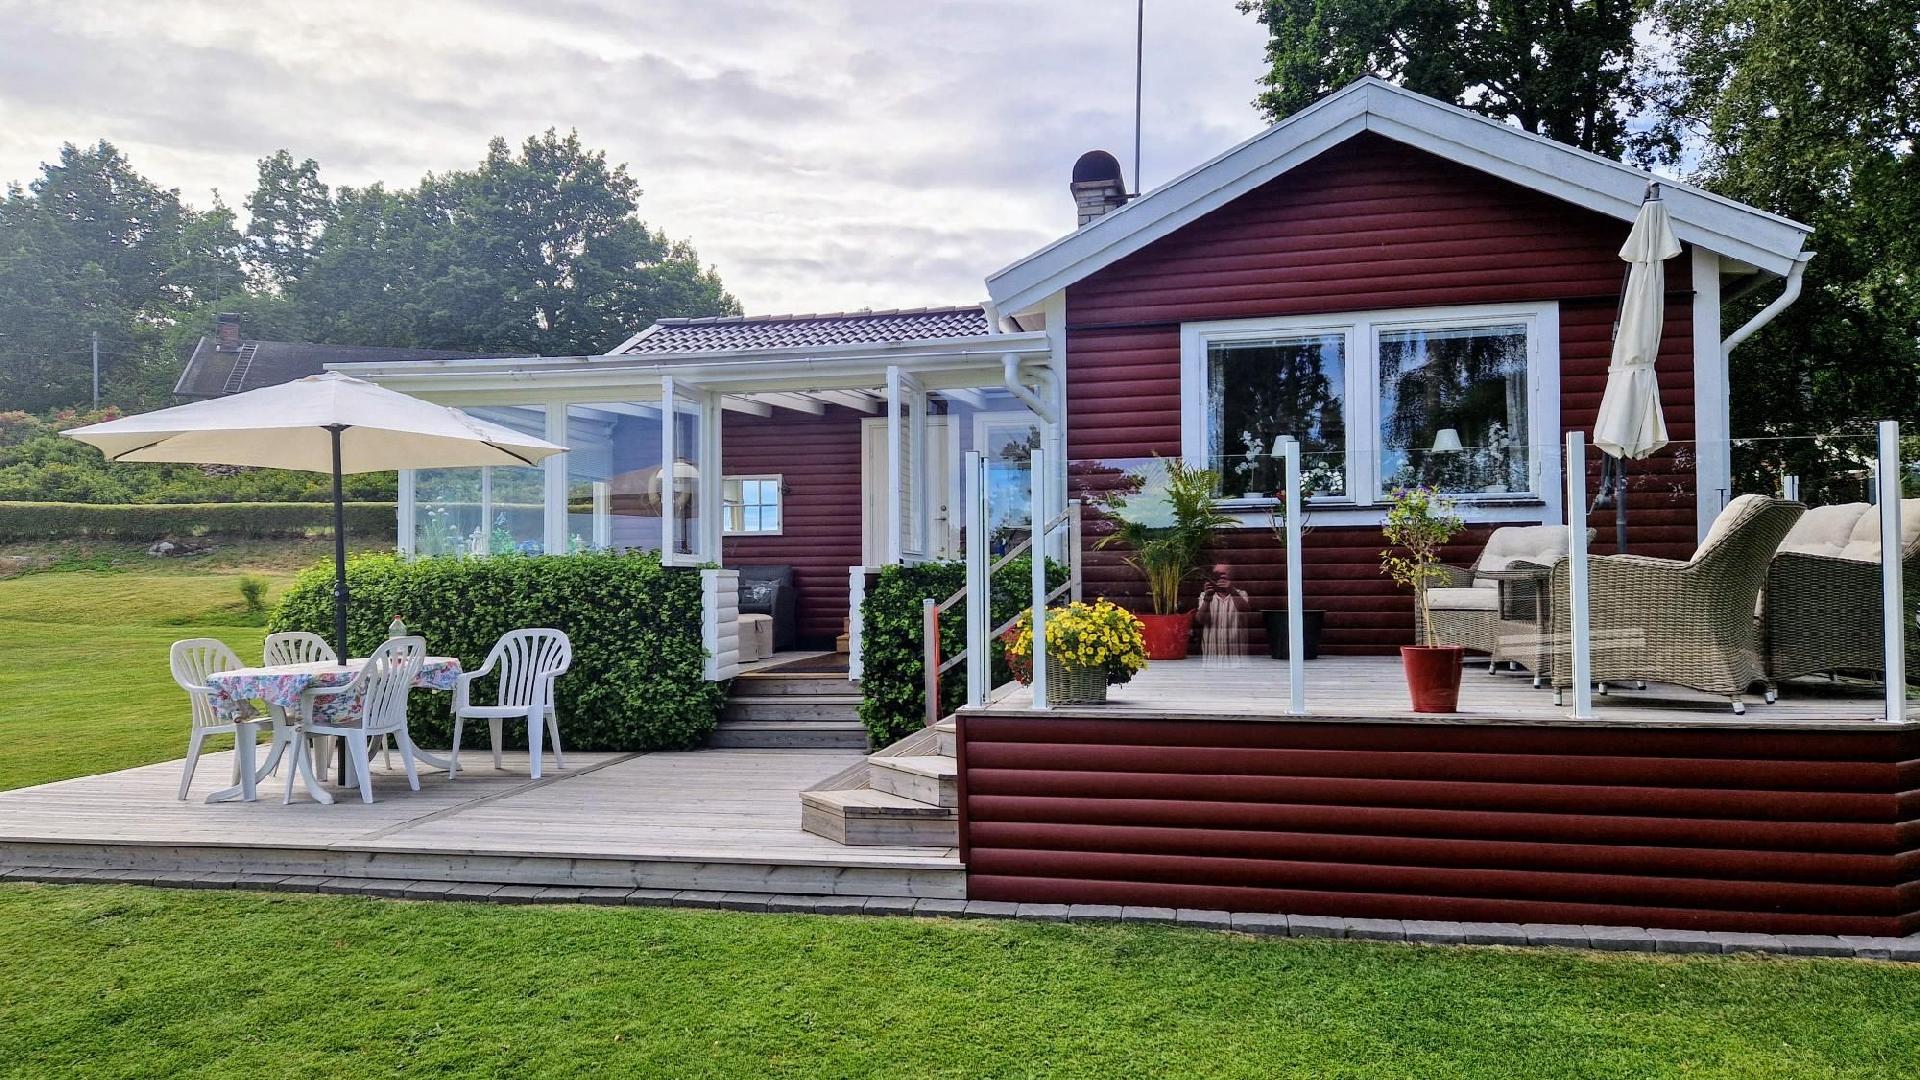 Ferienhaus für 6 Personen ca. 60 m² in A Ferienhaus in Schweden